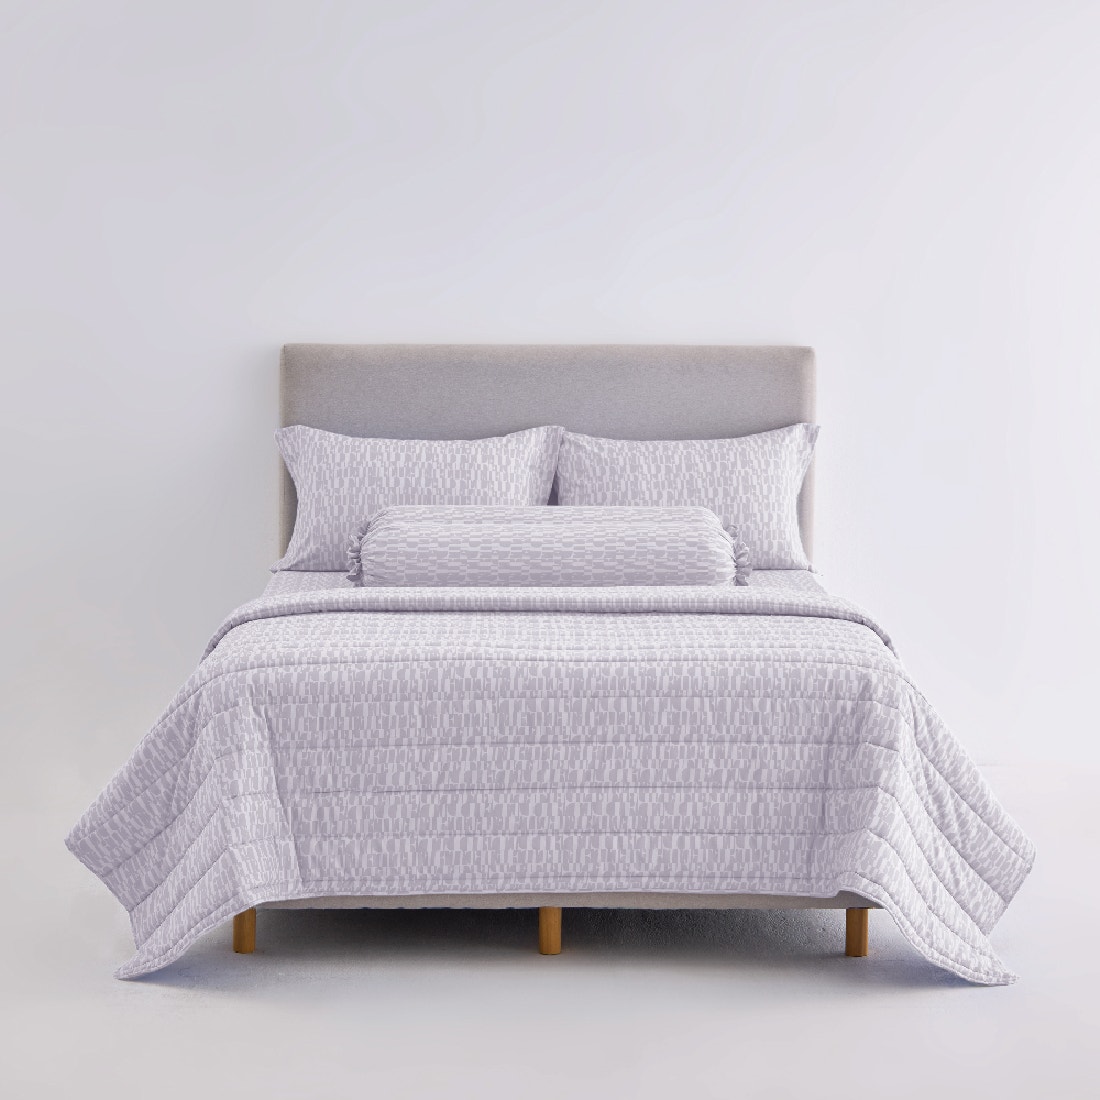 ชุดผ้าปูที่นอนพร้อมผ้านวม ELLE DECOR รุ่น PARIS SIMPLICITE - SOUFFLÉ ขนาด 6ฟุต 6ชิ้น